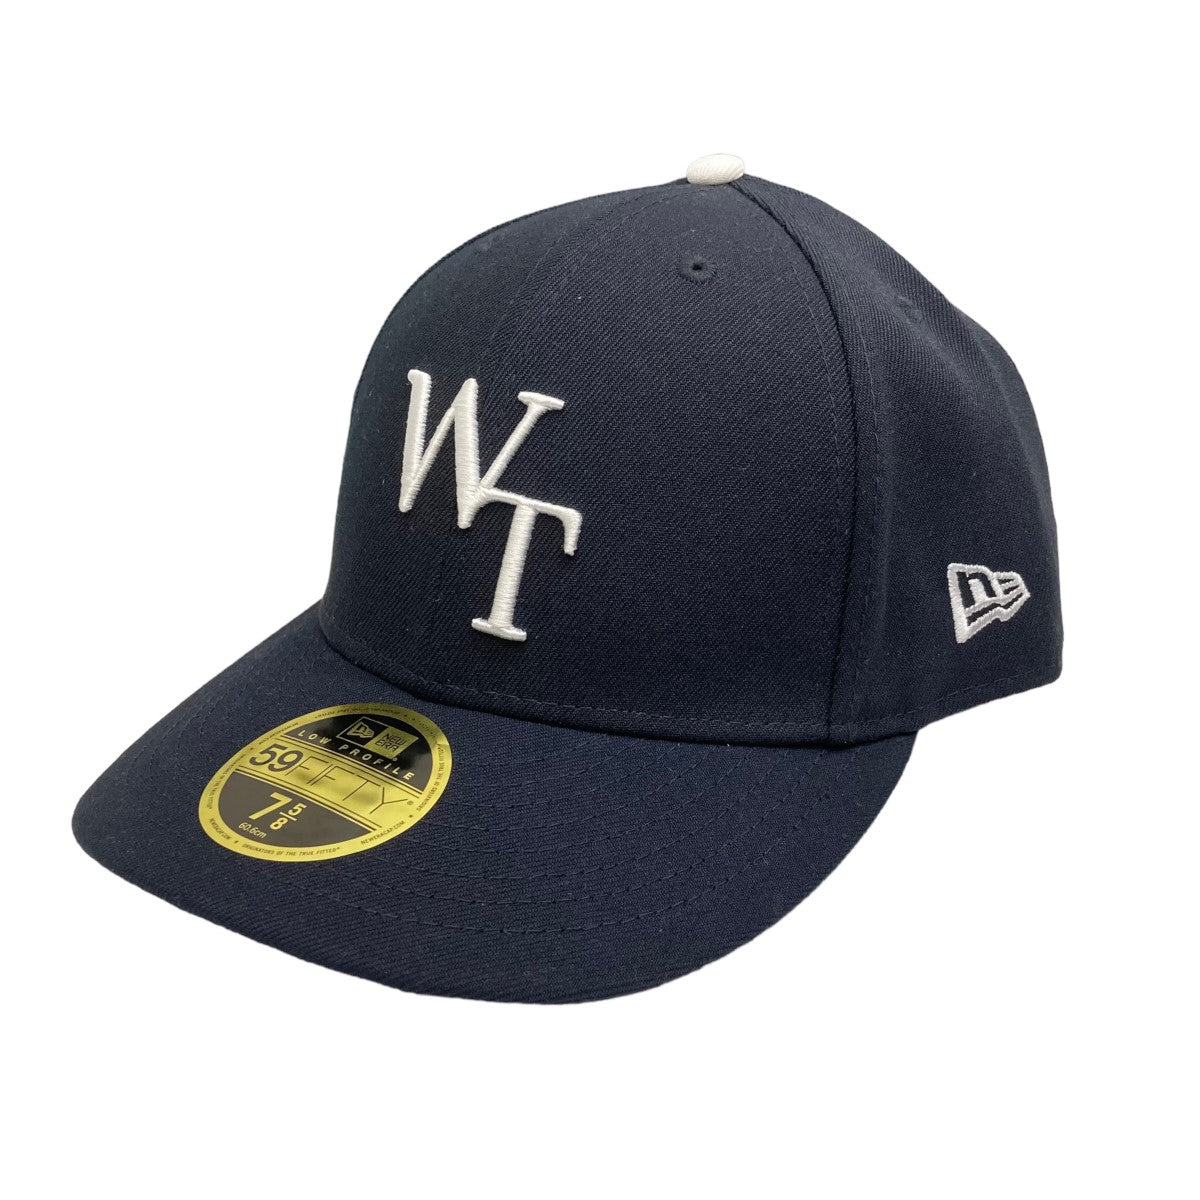 WTAPS(ダブルタップス) ×NEW ERA WT CAP キャップ ネイビー サイズ 12 